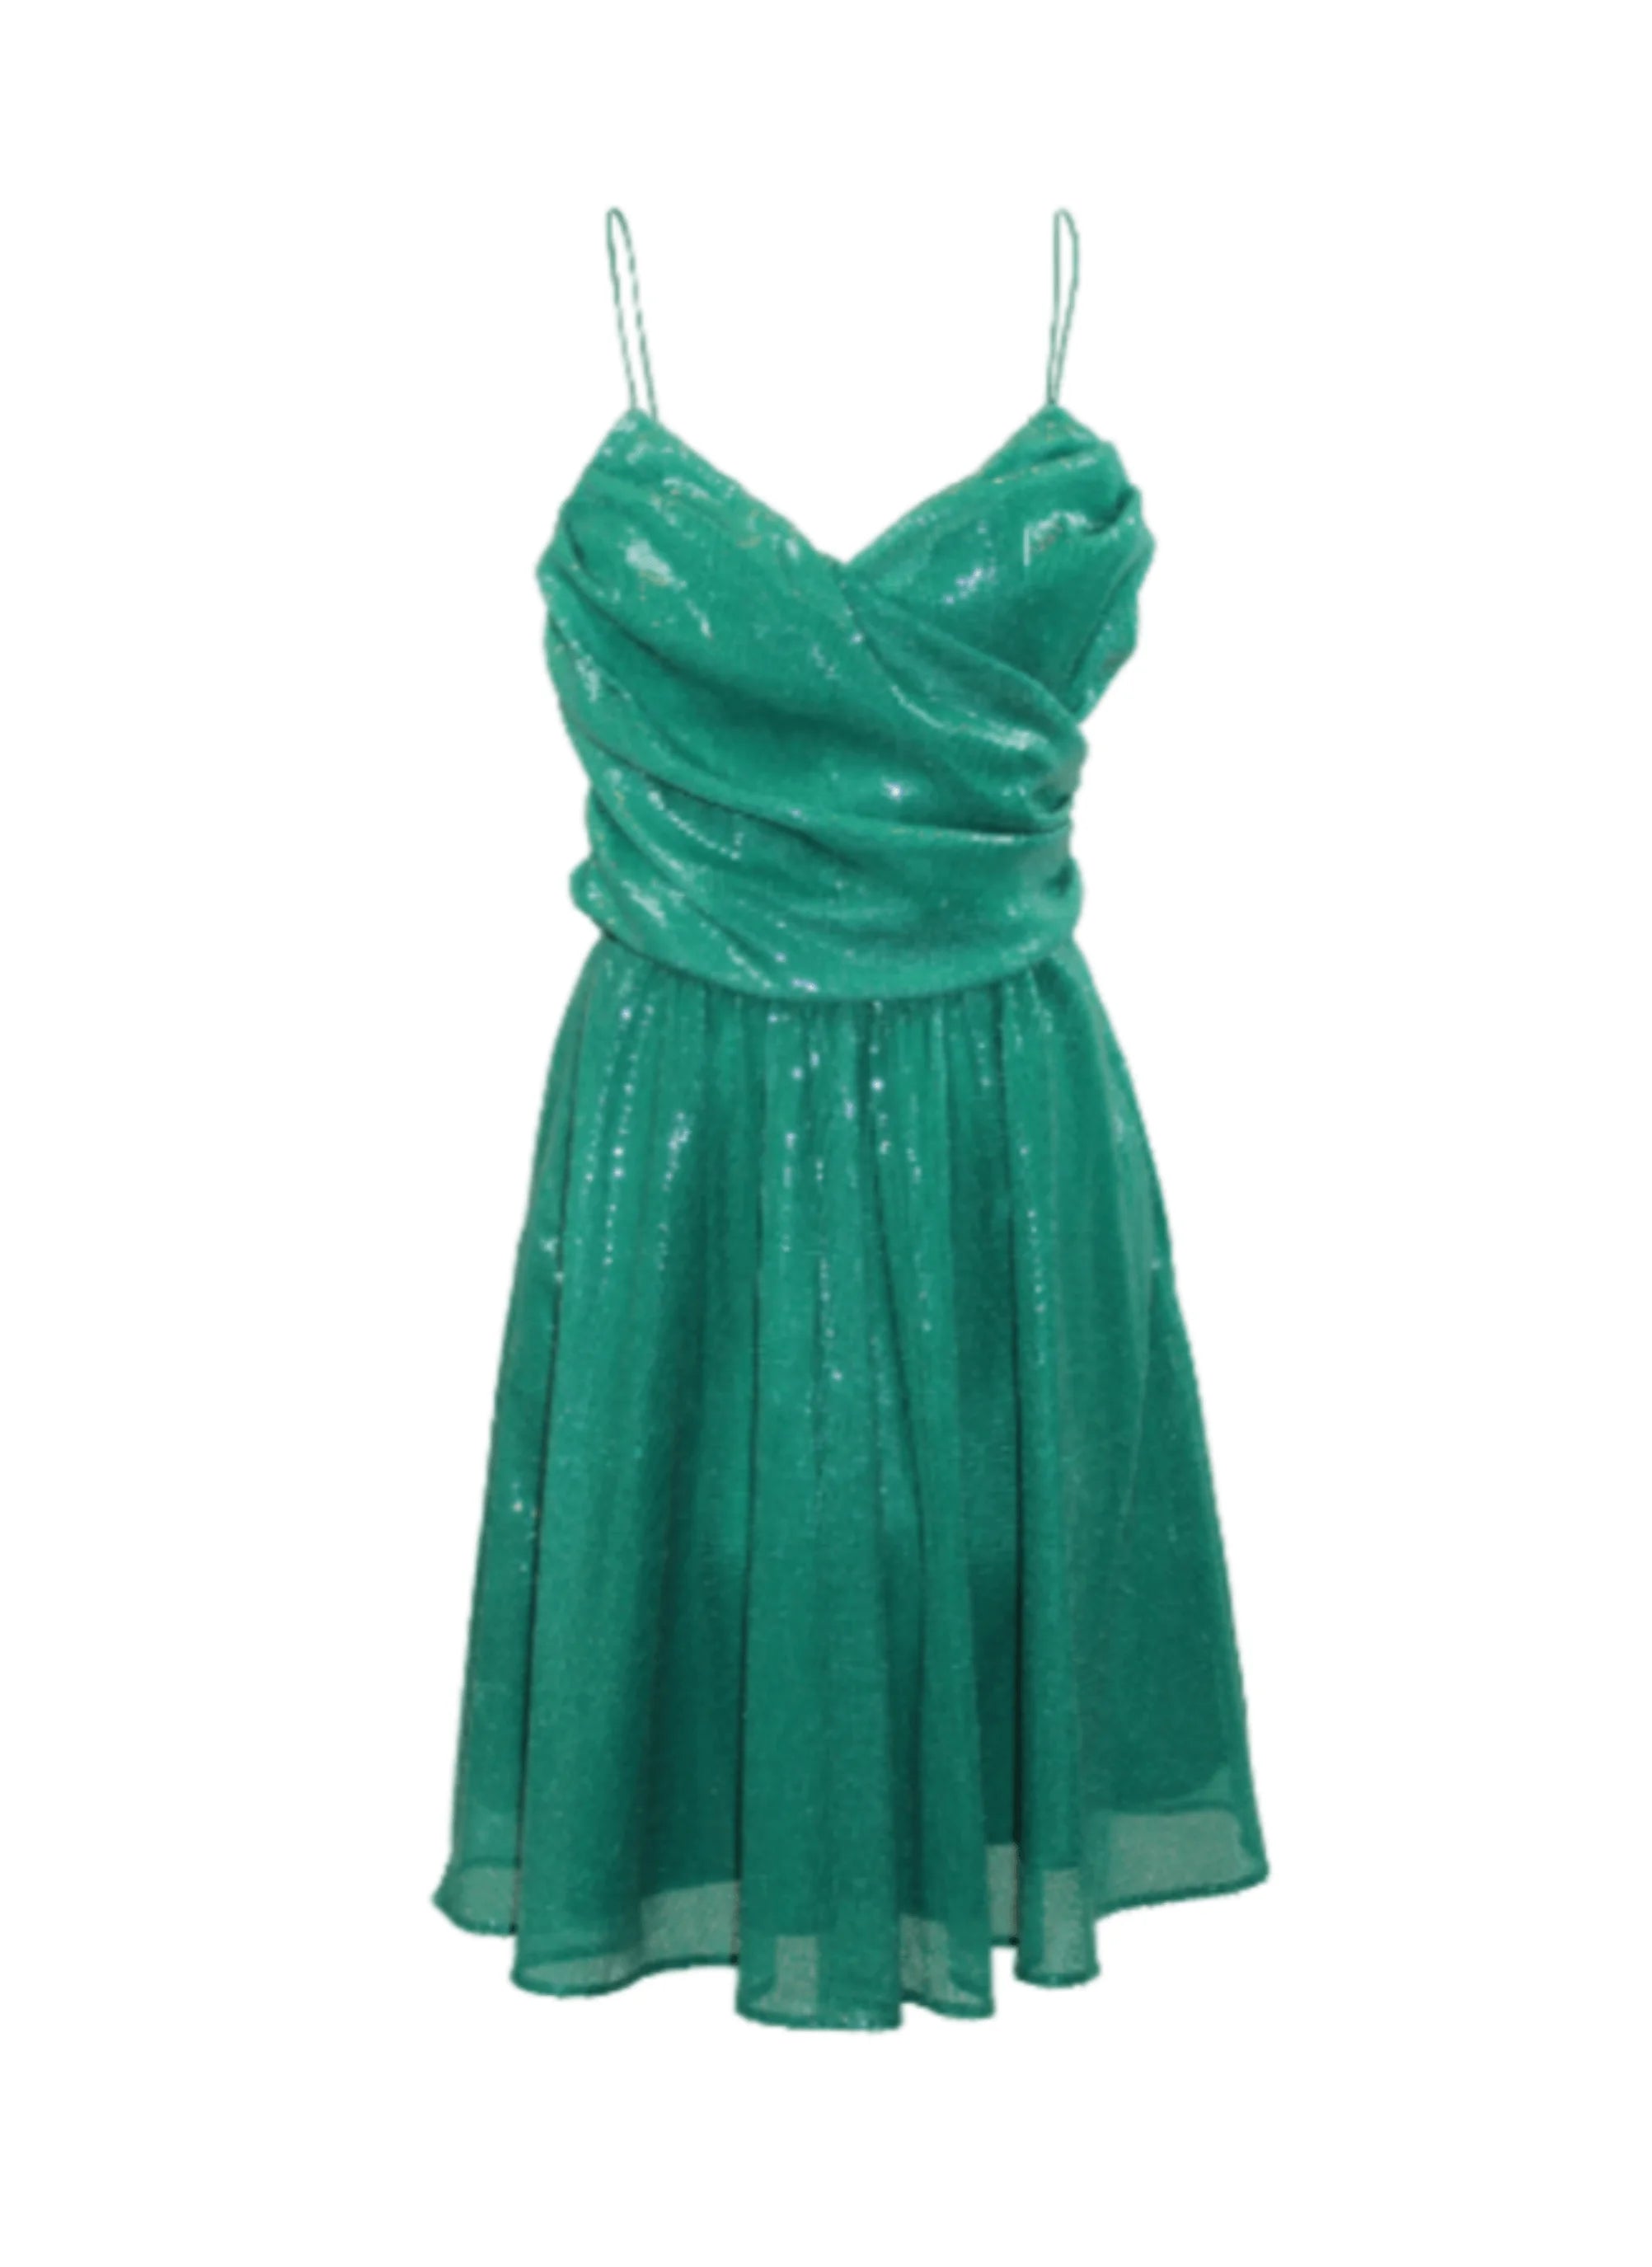 Pailletten -Mini -Kleid - dunkelgrün